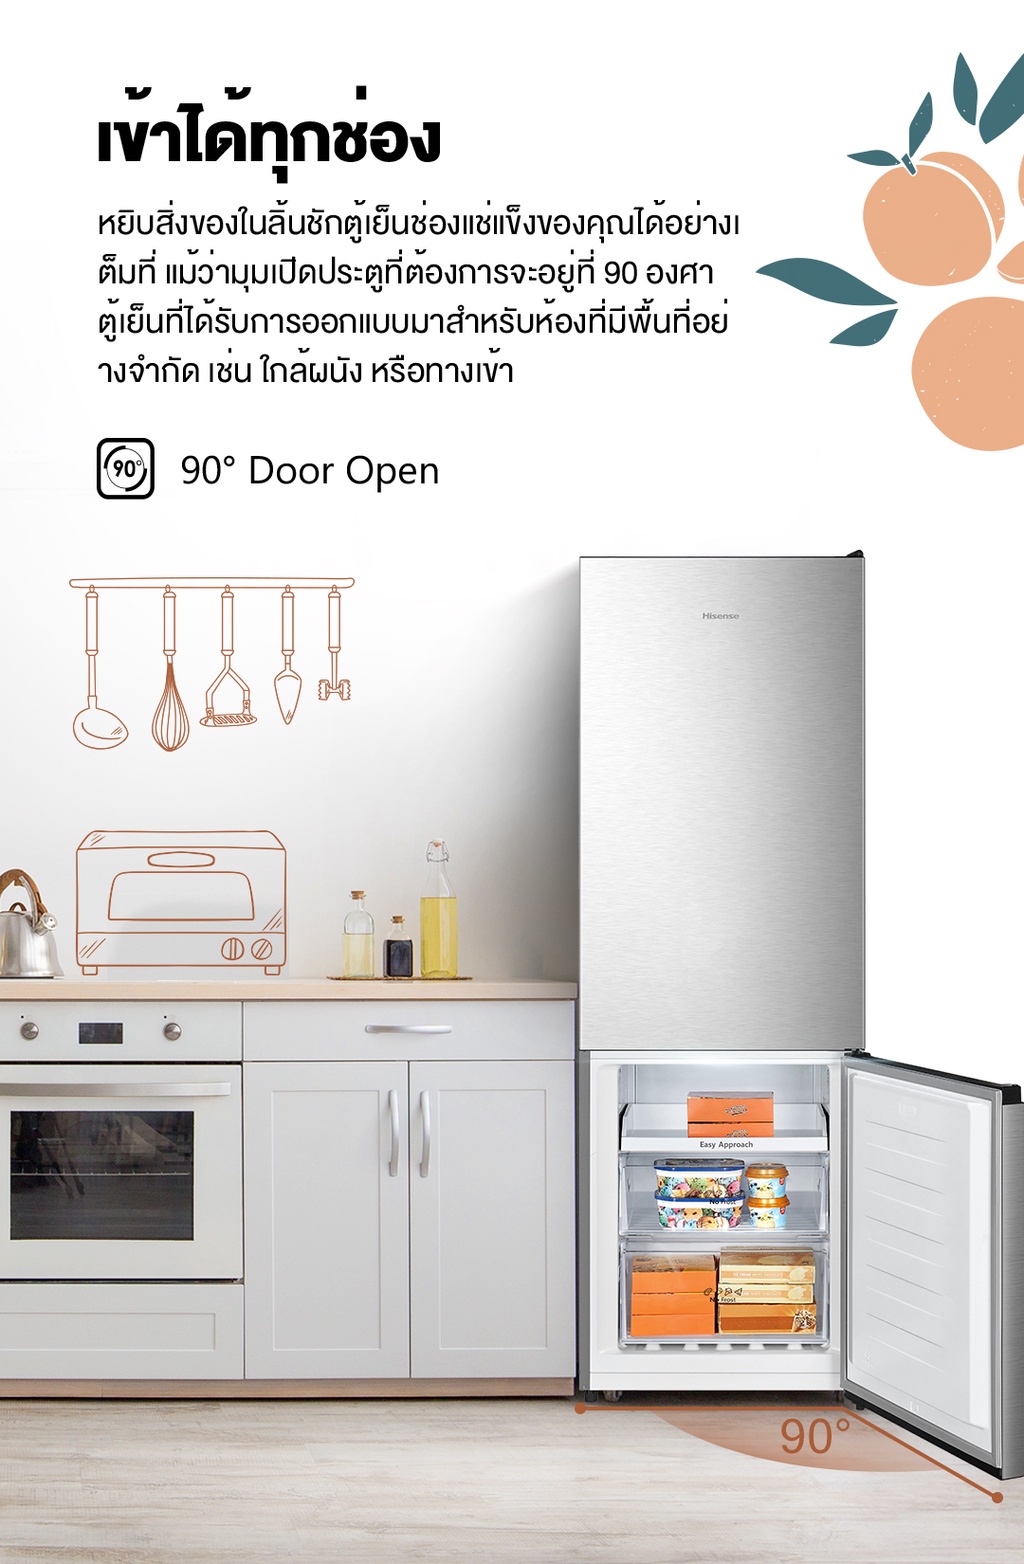 รูปภาพรายละเอียดของ Hisense ตู้เย็น 2 ประตู :10.6 Q/299 ลิตร รุ่น ERB286S